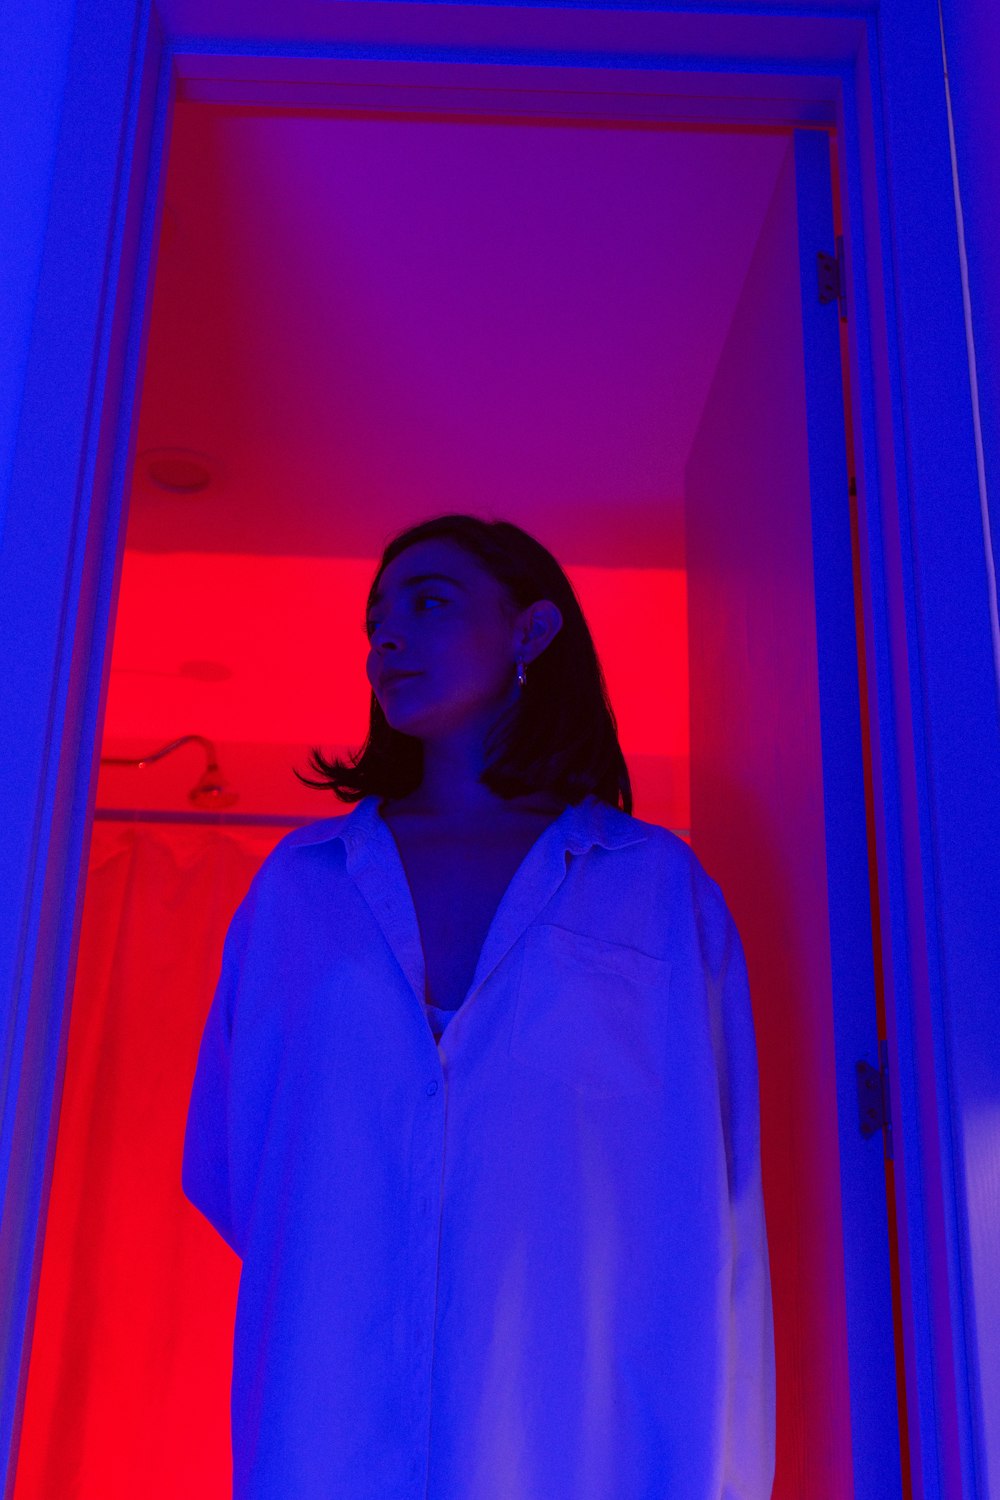 eine Frau, die in einem Raum mit rotem und blauem Licht steht